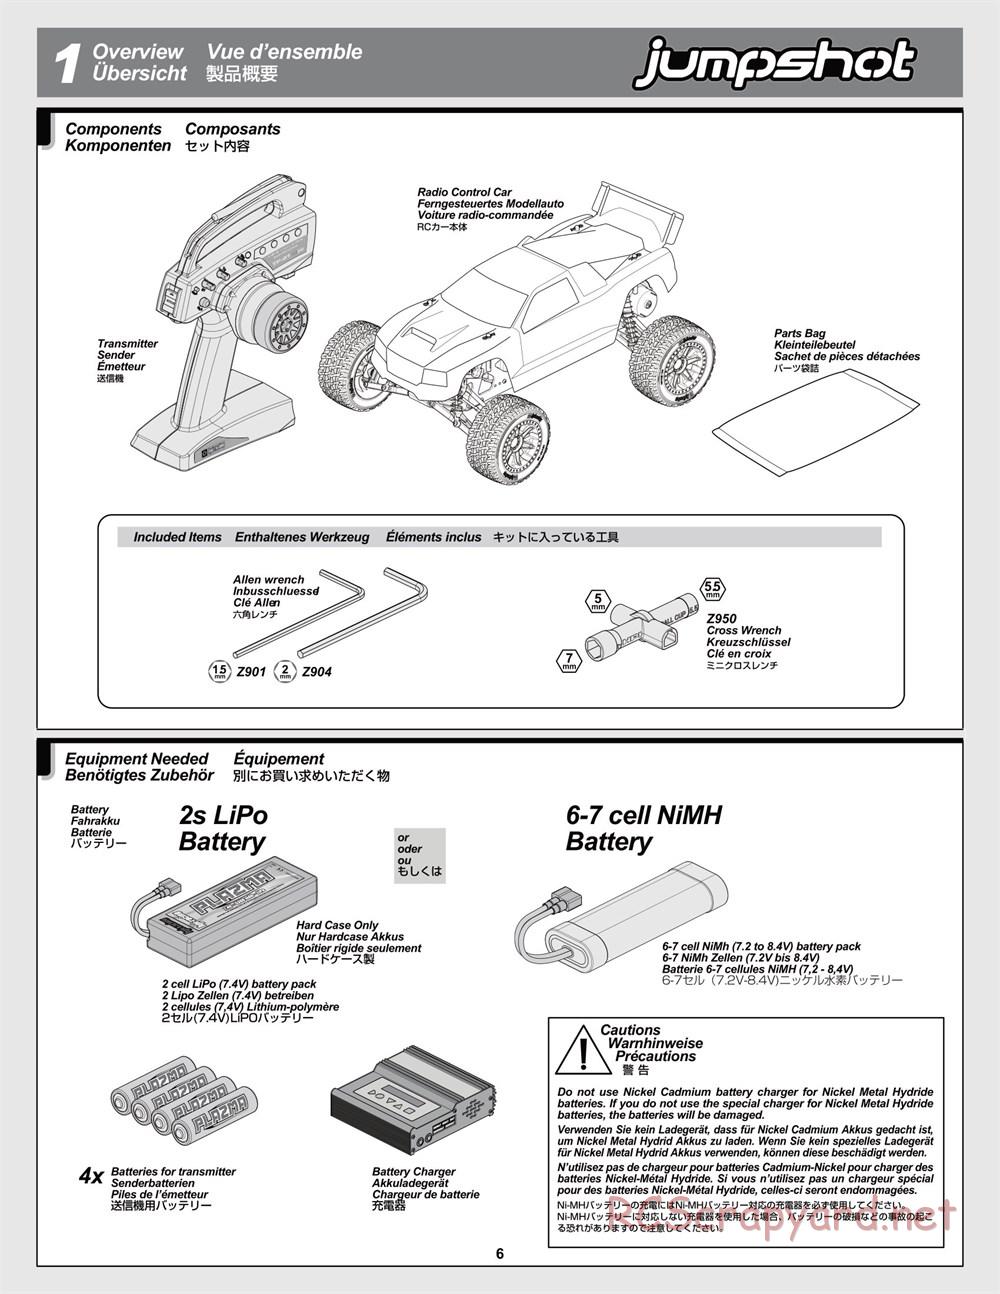 HPI - Jumpshot MT V2 - Manual - Page 6